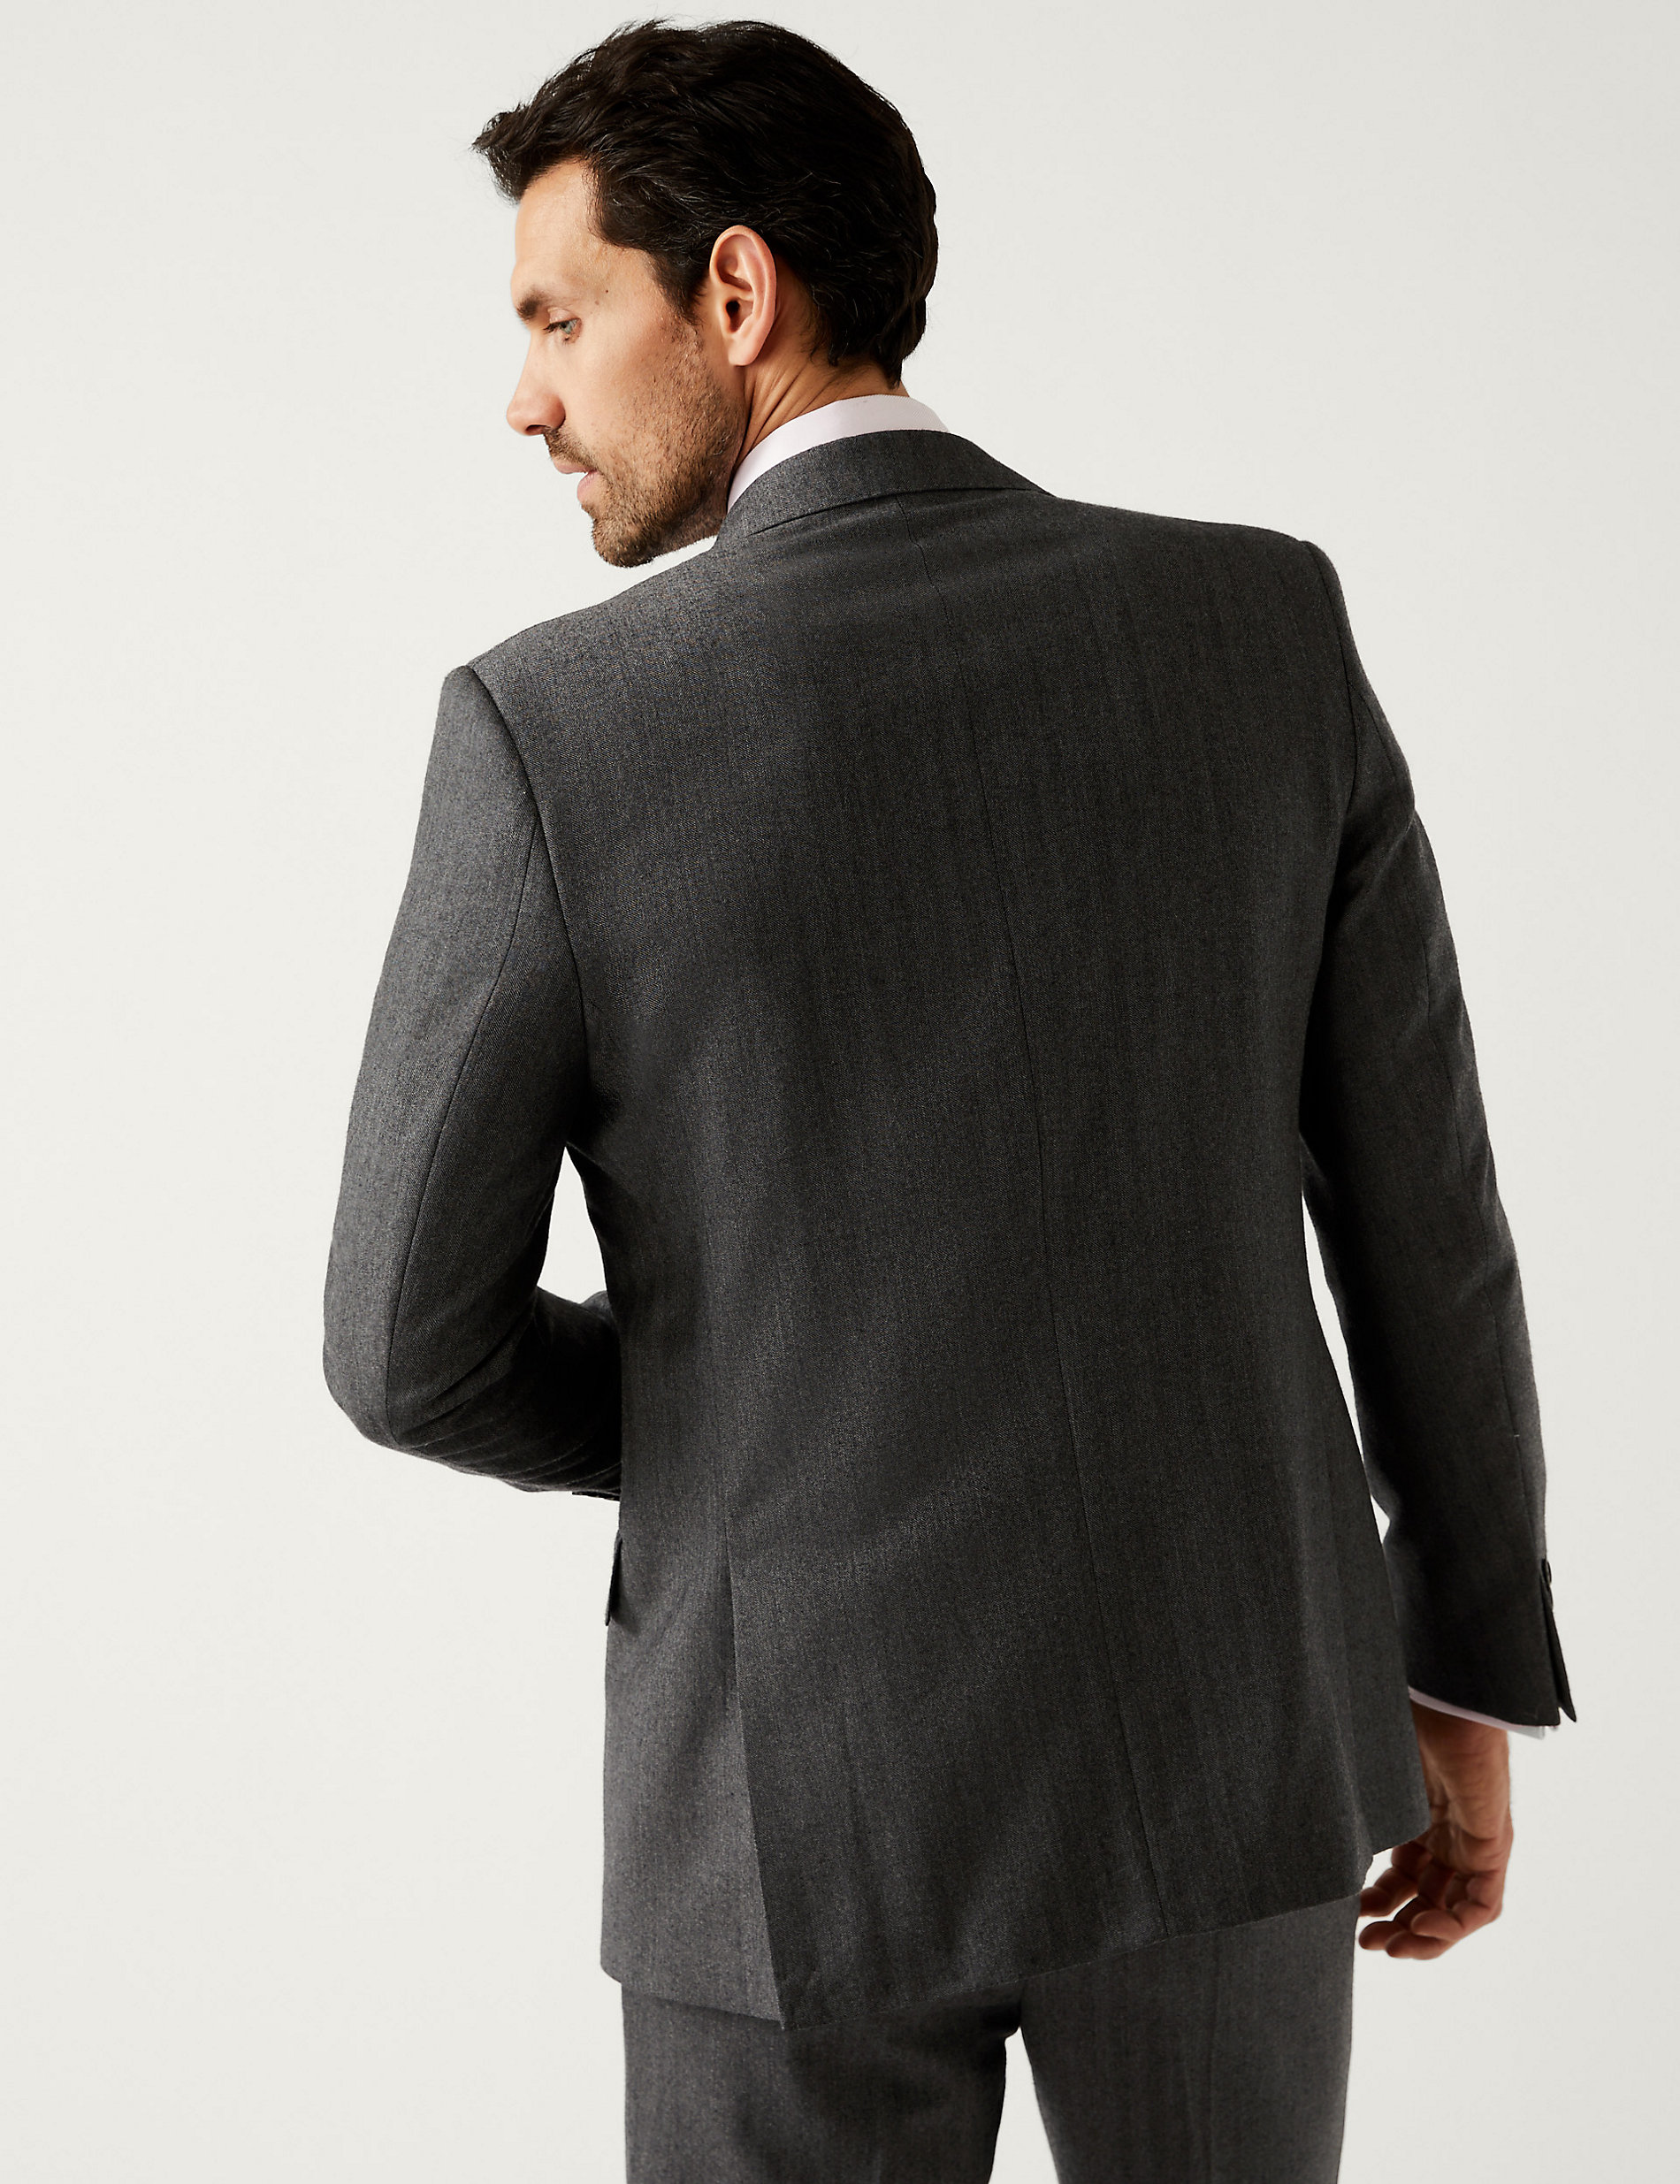 Κοστούμι σε κανονική γραμμή με σχέδιο ψαροκόκαλο από 100% βρετανικό μαλλί